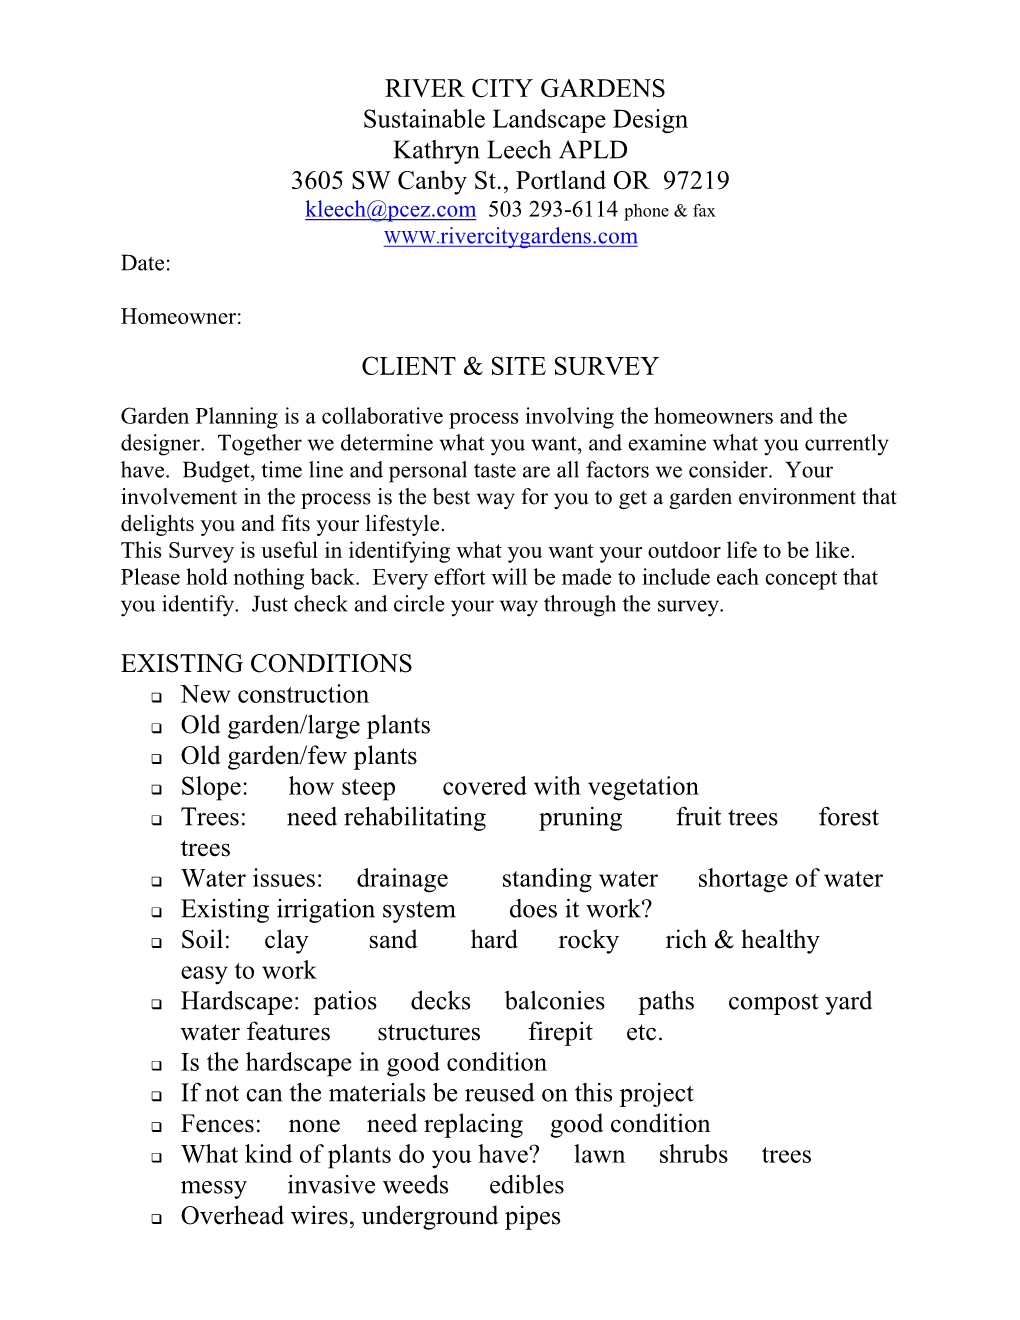 Client & Site Survey